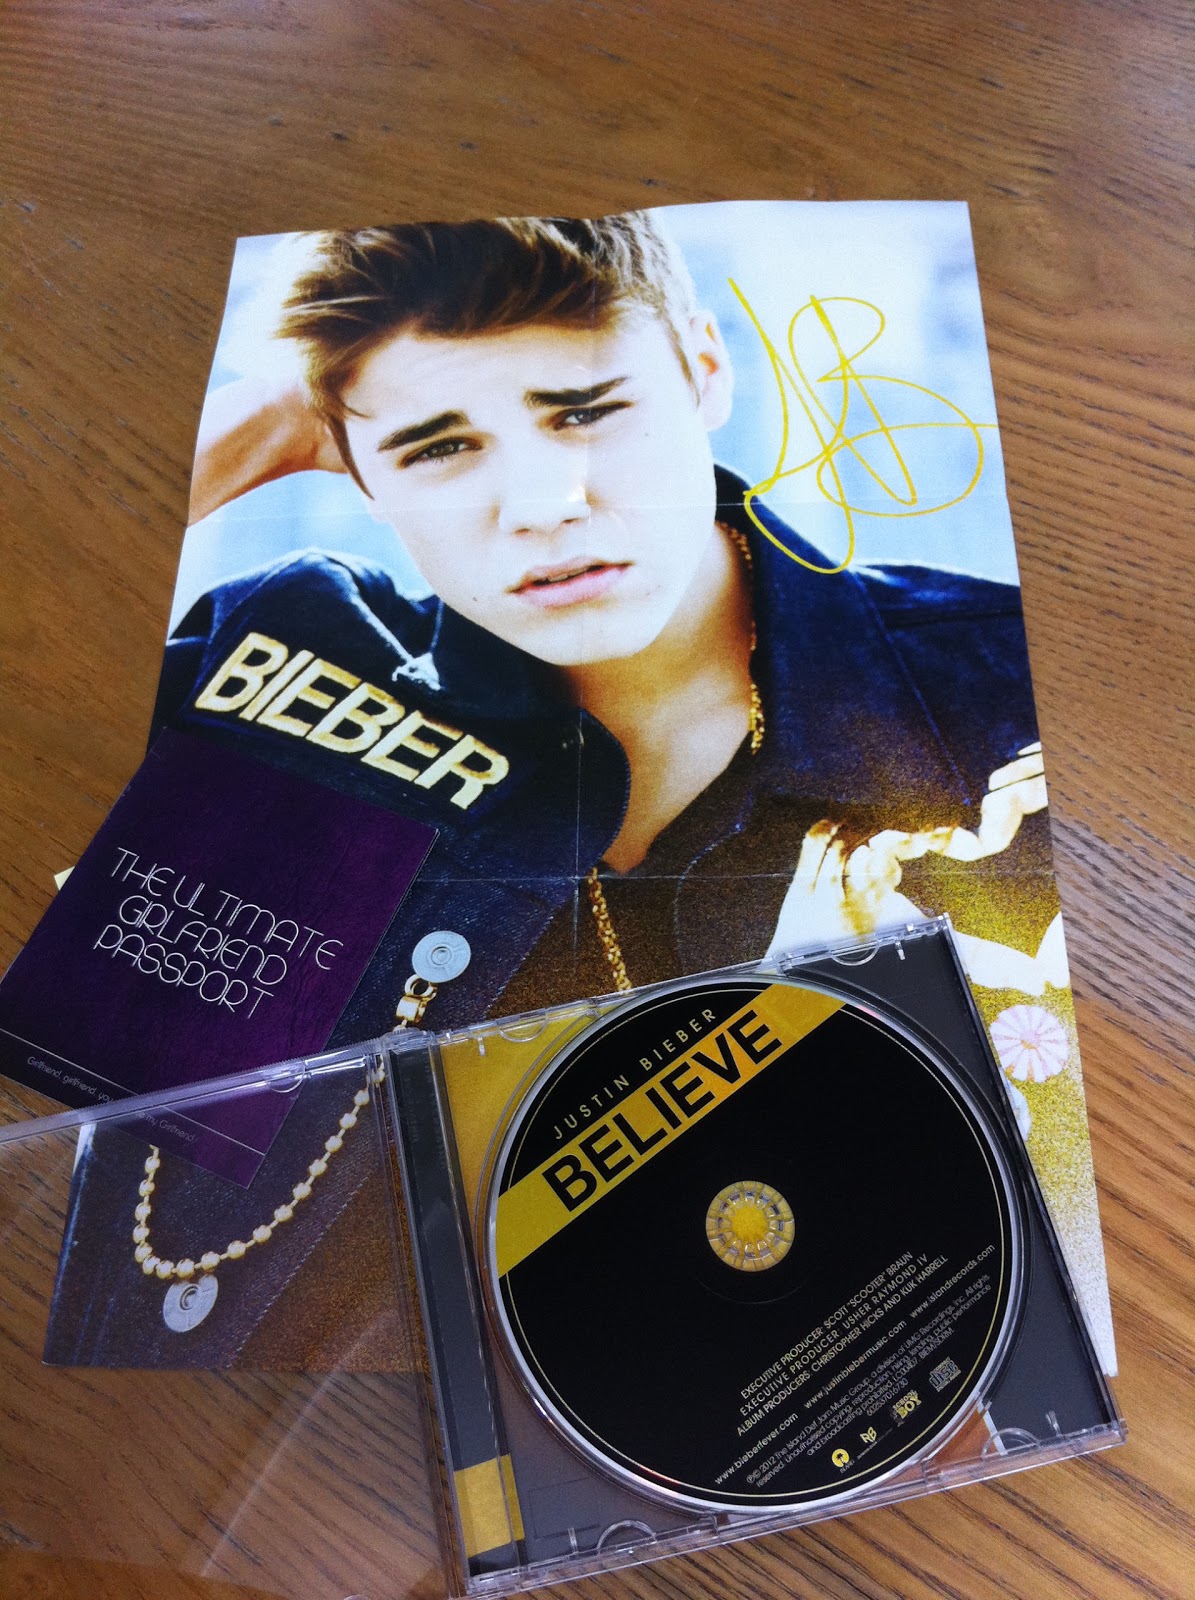 Rock it heartless!!!: Album review : Justin Bieber's Believe album